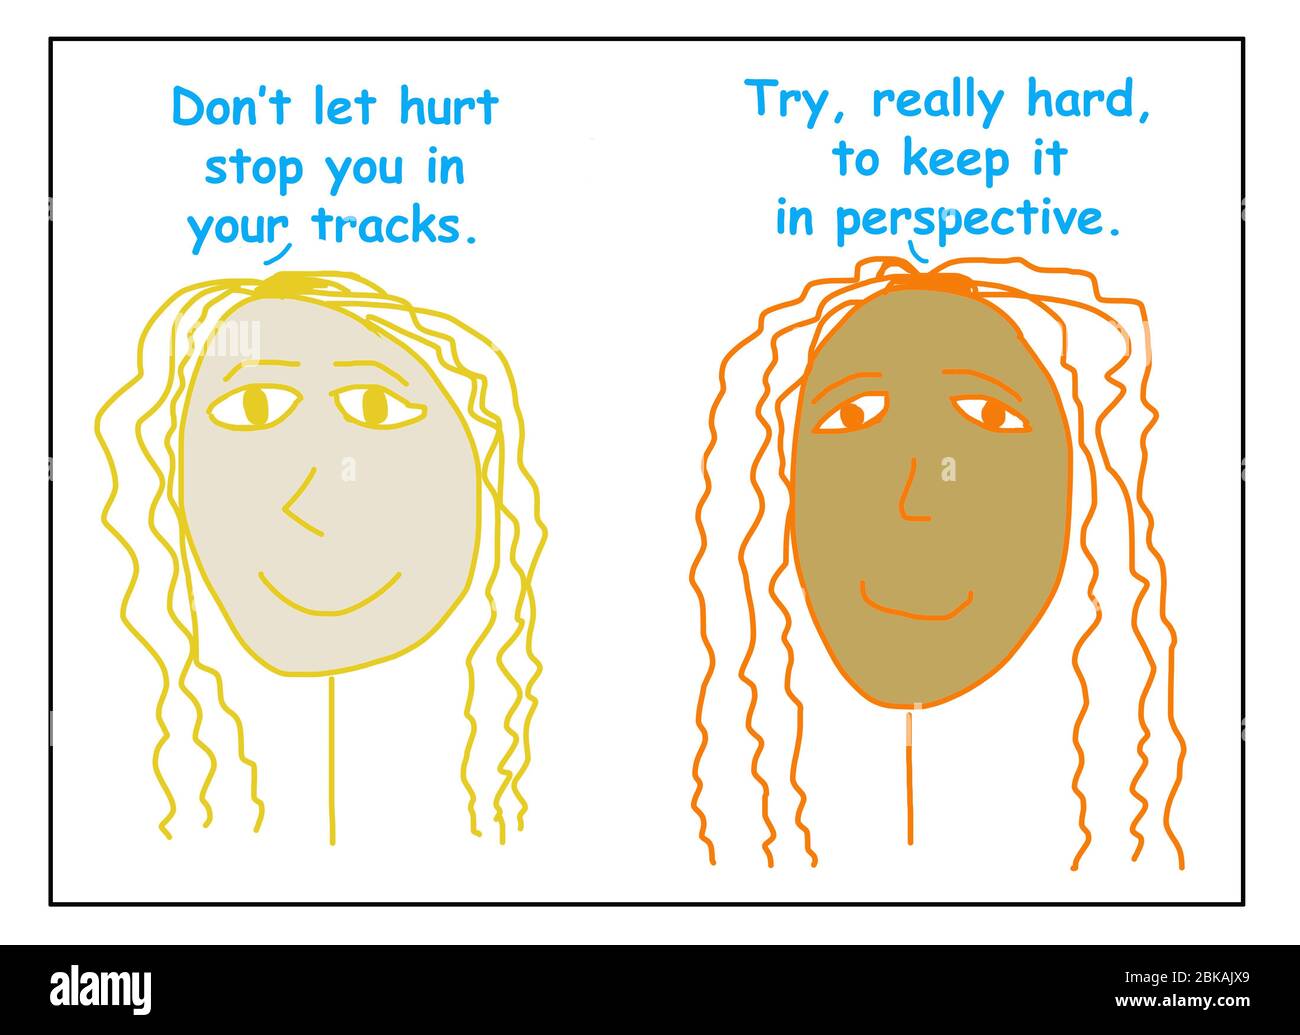 Farbe Cartoon von zwei lächelnden, ethnisch unterschiedlichen Frauen sagen, dass weh Sie in Ihren Tracks stoppen kann, so versuchen, es in der Perspektive zu halten. Stockfoto